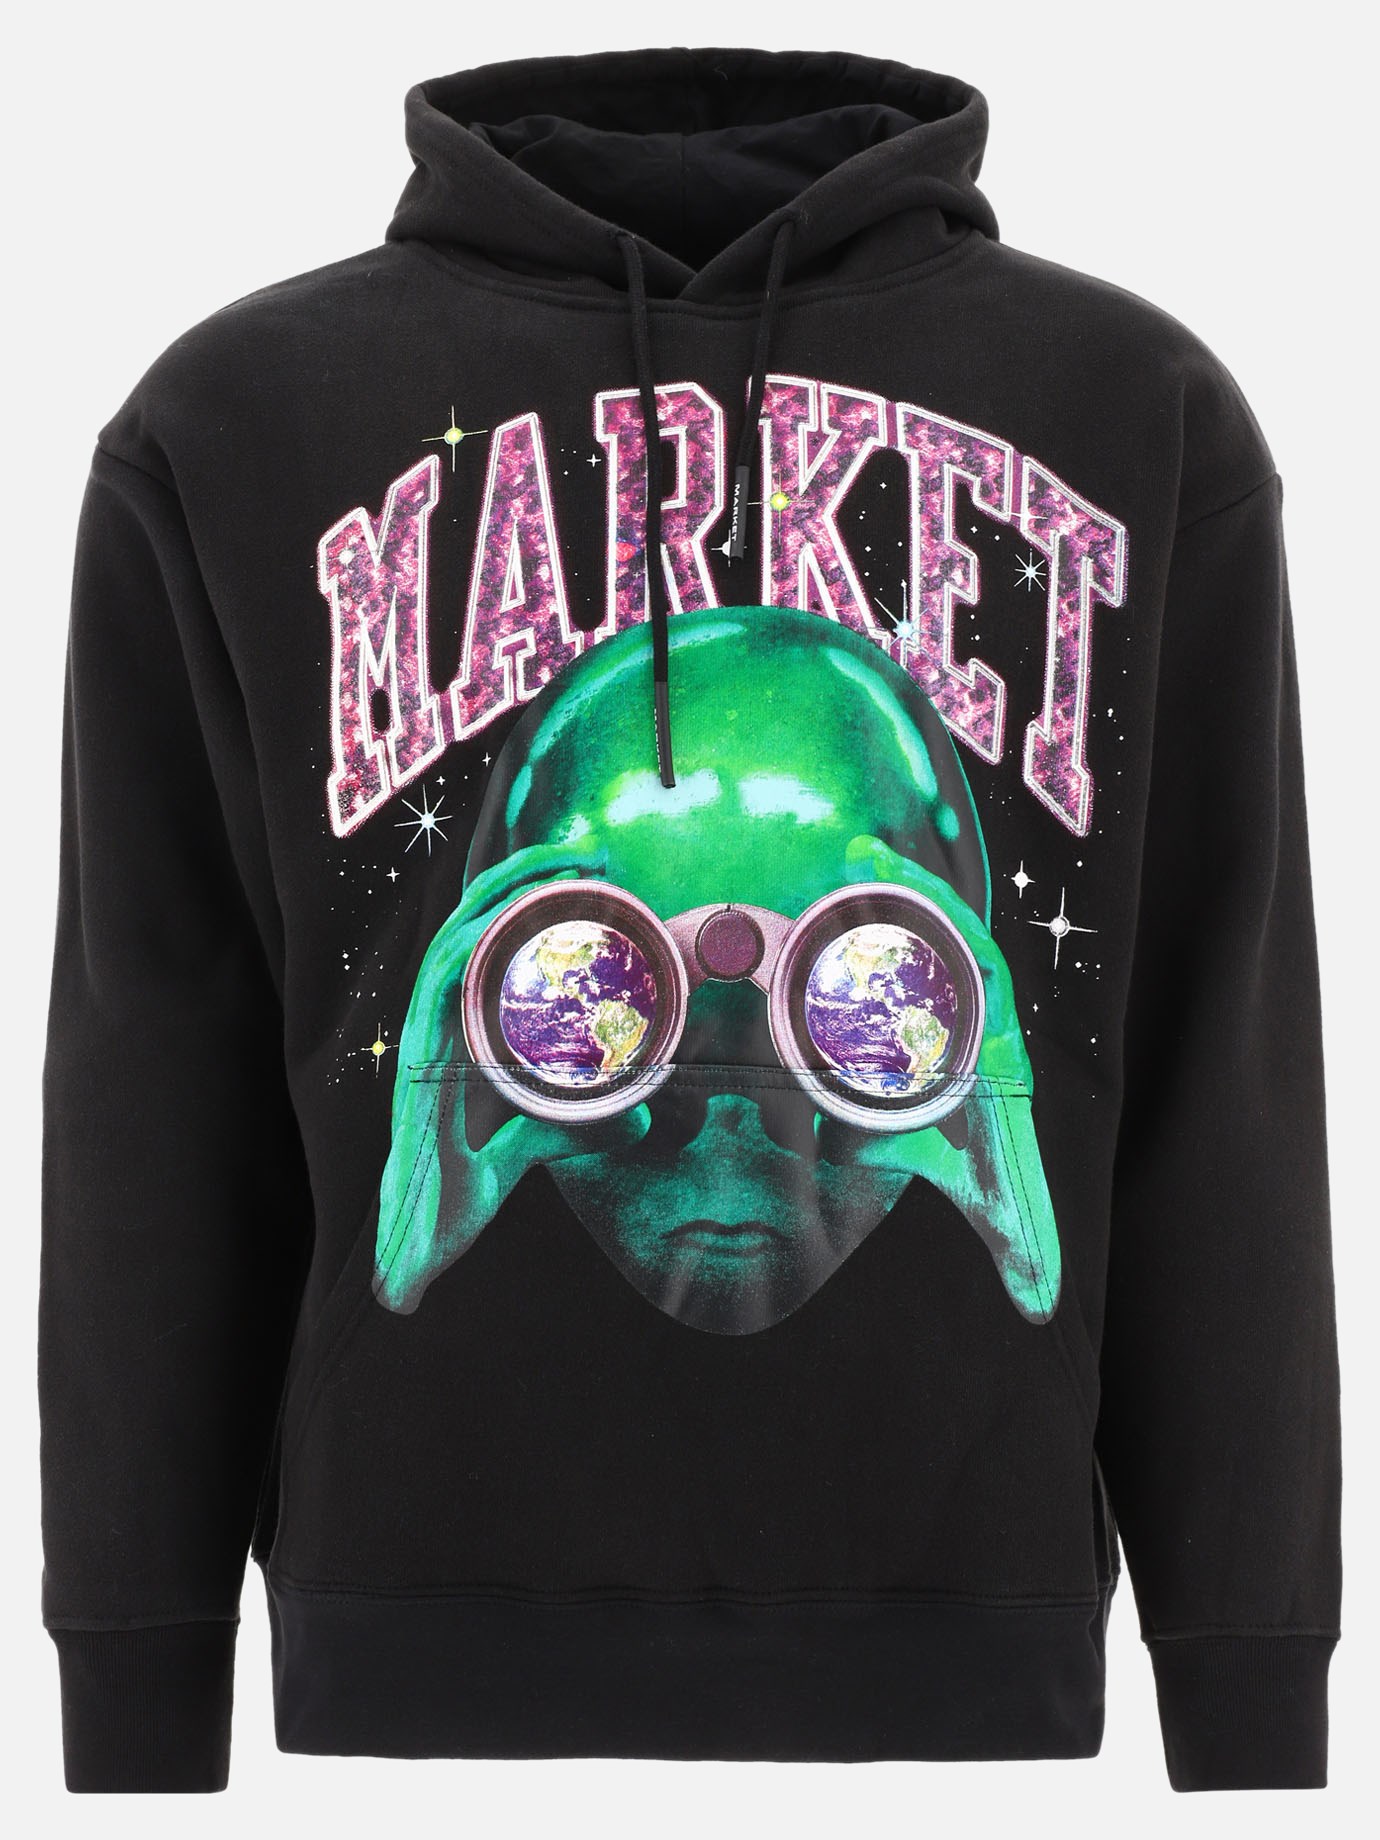  Alien Sightseeing  hoodie by Market